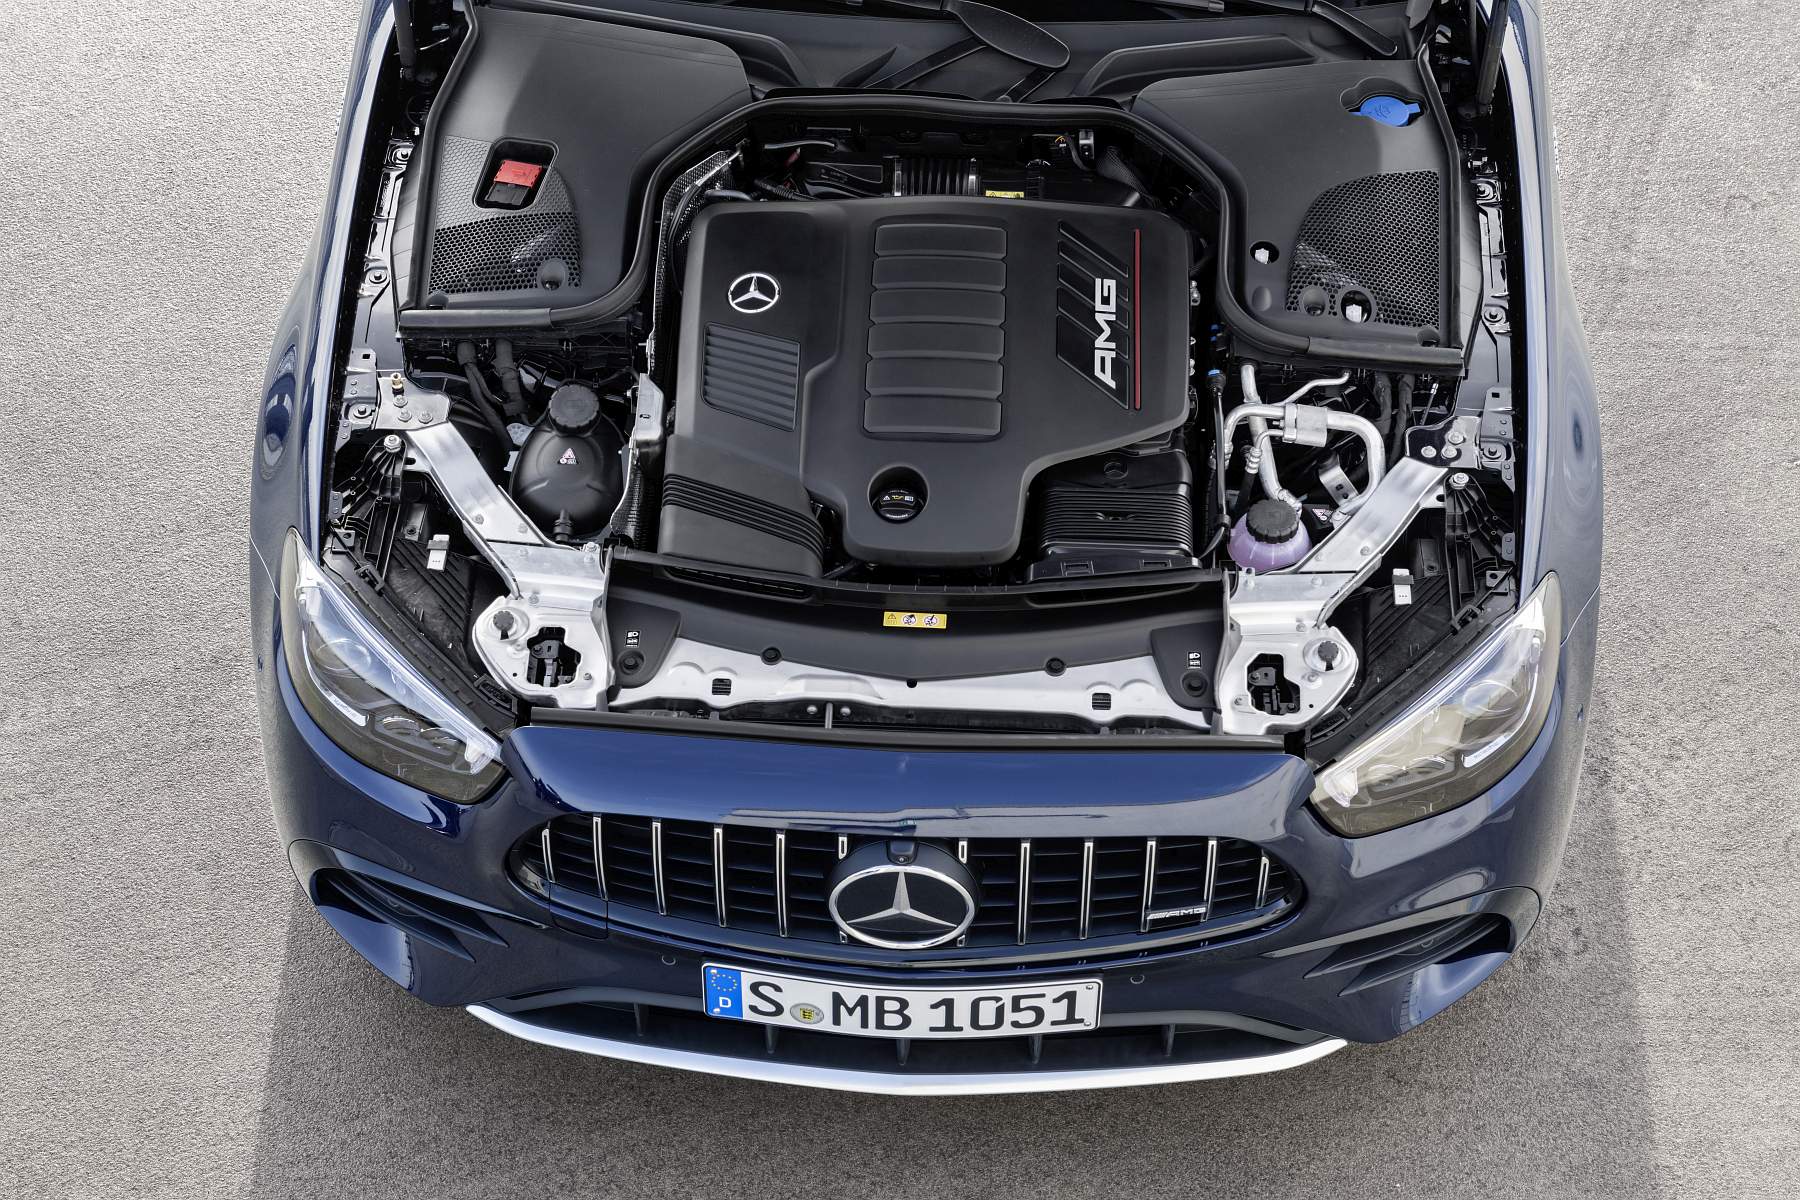 Mercedes-AMG E-Klasse (S213), 2020

Mercedes-AMG E-Klasse (S213), 2020